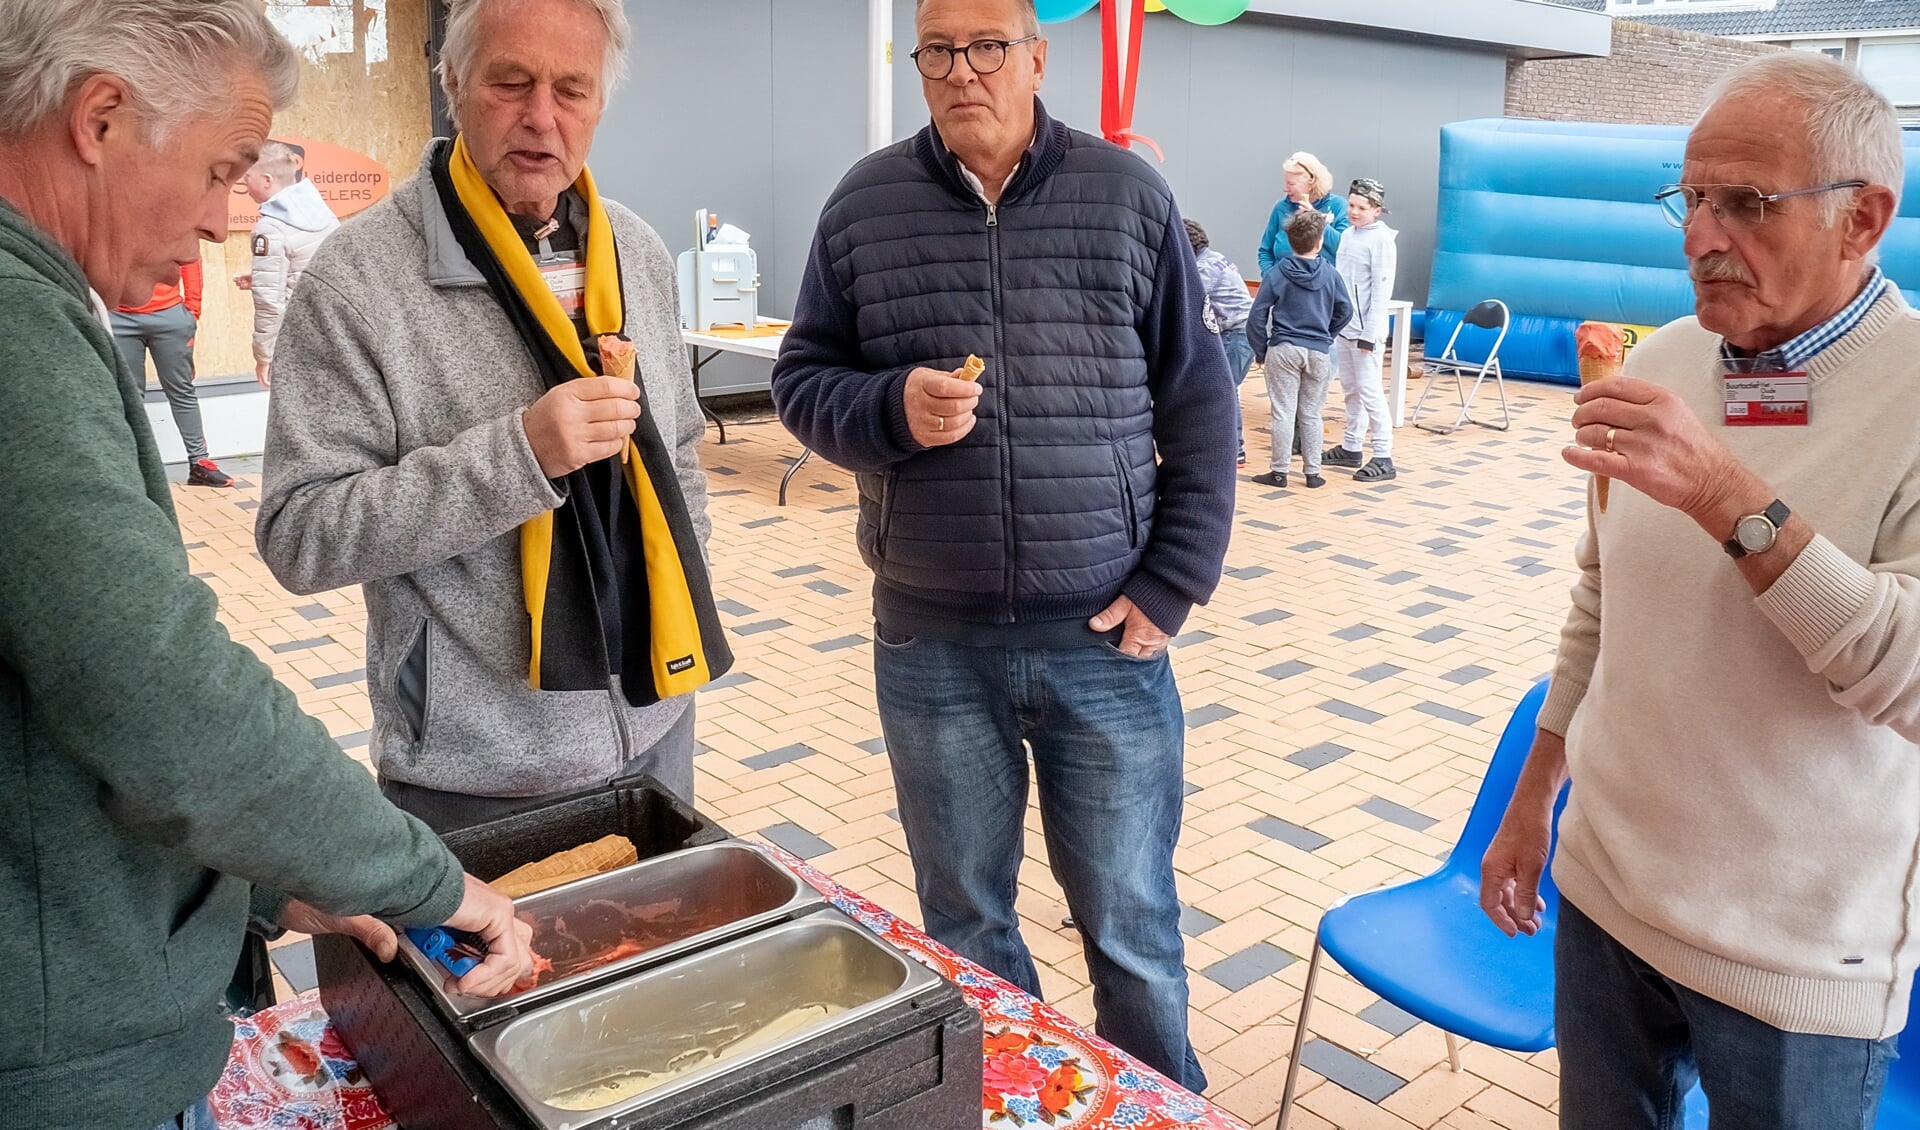 Bestuursleden Robert Laan (tweede van links) en Jaap Timmermans (geheel rechts) genieten van een ijsje op het verjaarsfeest van \t Buurthuis. | Foto: J.P. Kranenburg